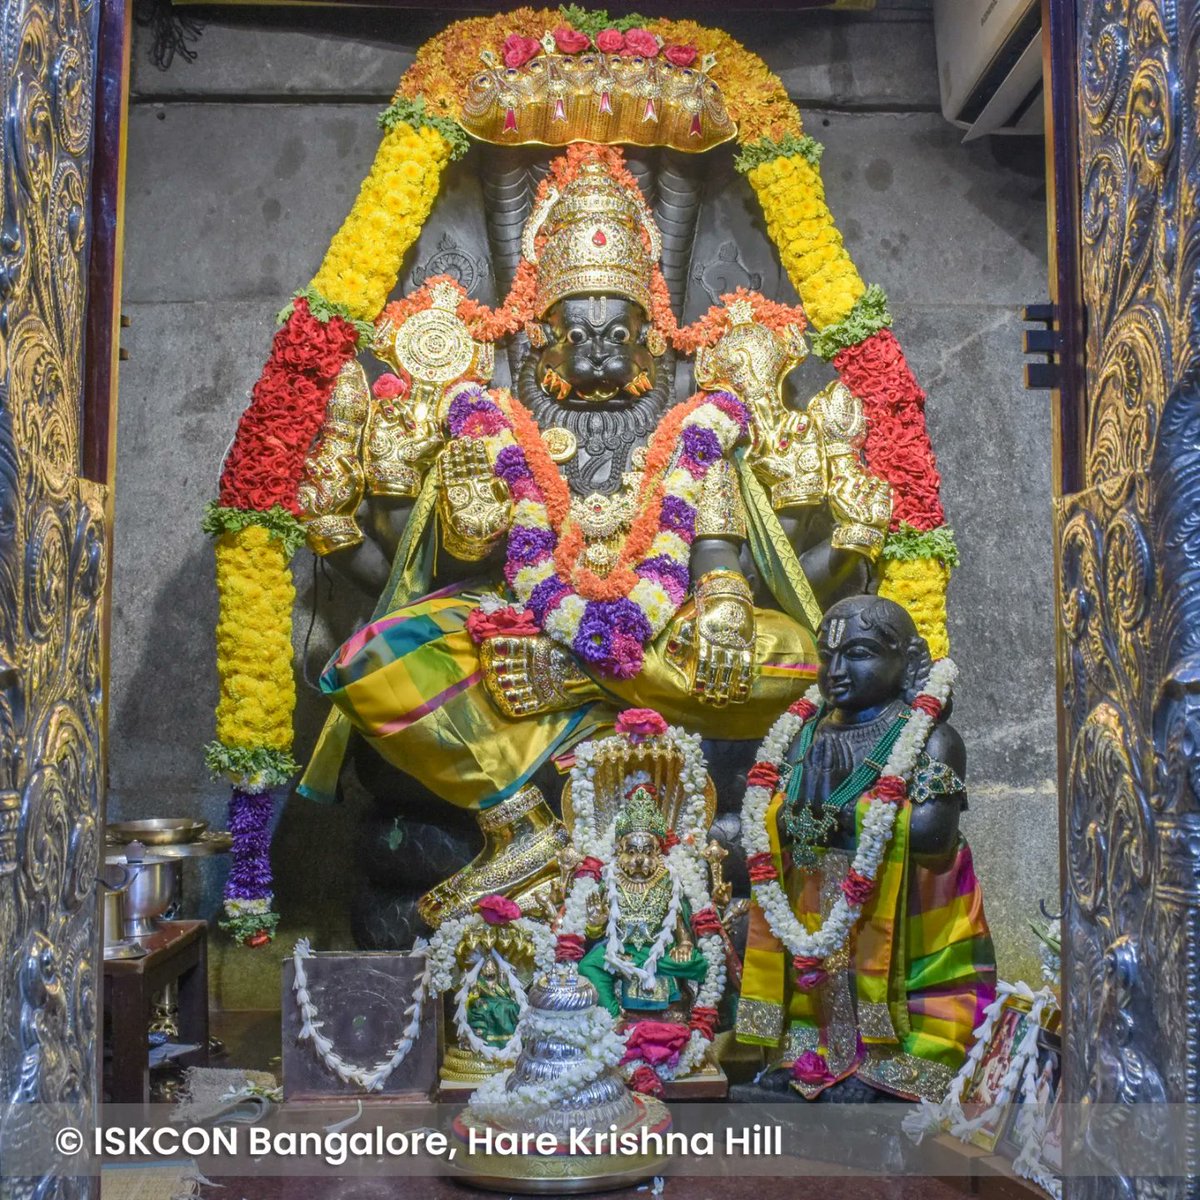 Daily darshan from ISKCON Bangalore temple - April 28, 2024.

#ISKCONBangalore #iskcon #DailyDarshan #temple #krishna #radhakrishna #trending #diwali #krishnalove #darshan #hkhill #vkhill #iskcontemple #sunday #sundayvibes #SundayMotivation #blessings #divine #spiritualgrowth